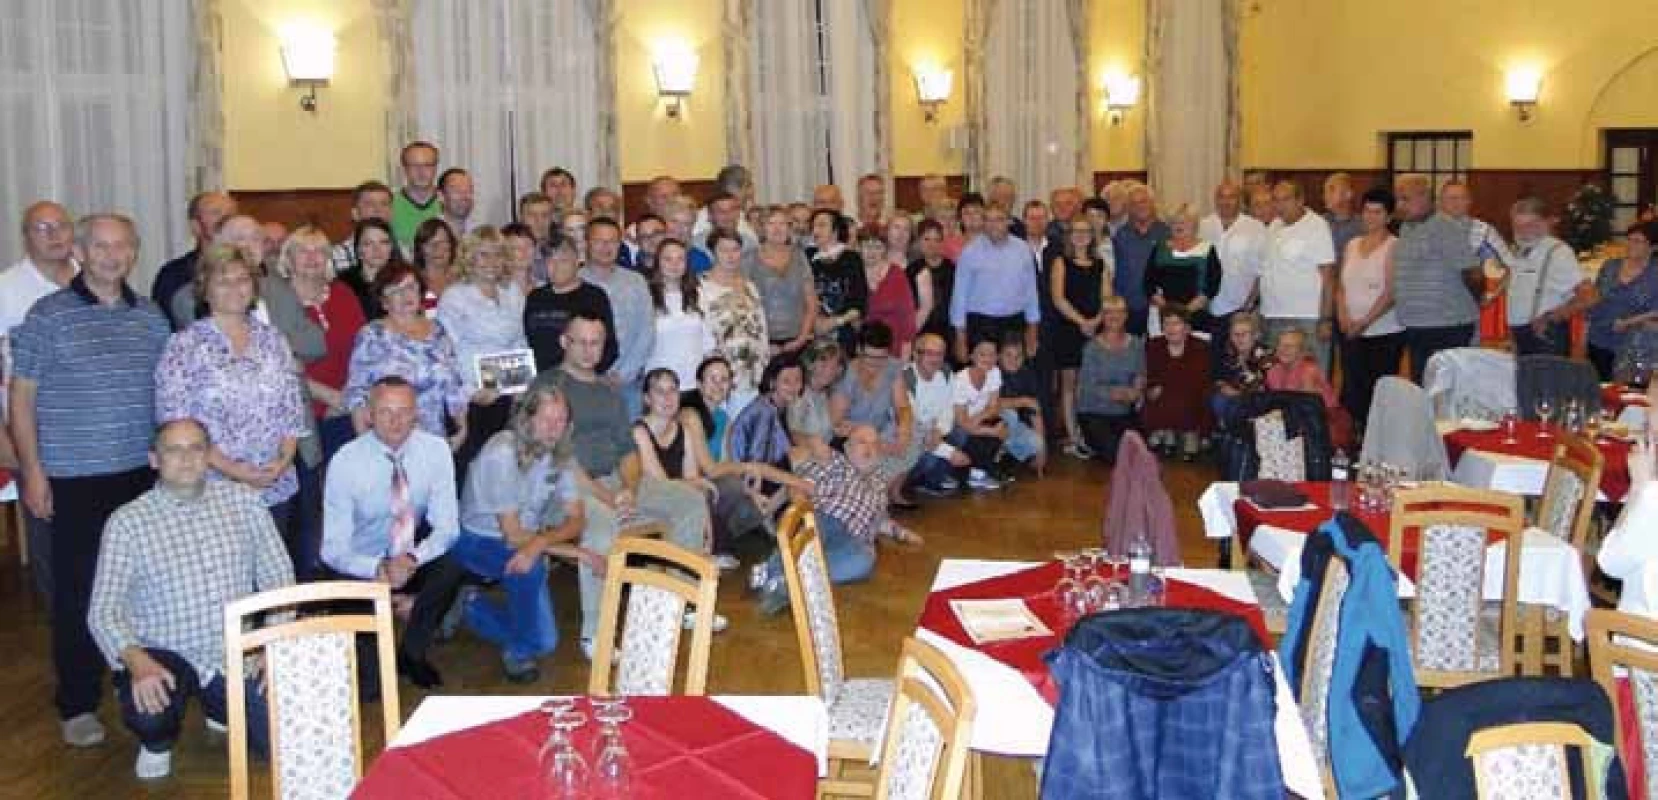 Setkání osob žijících s transplantovaným srdcem se letos uskutečnilo v Karlově Studánce.